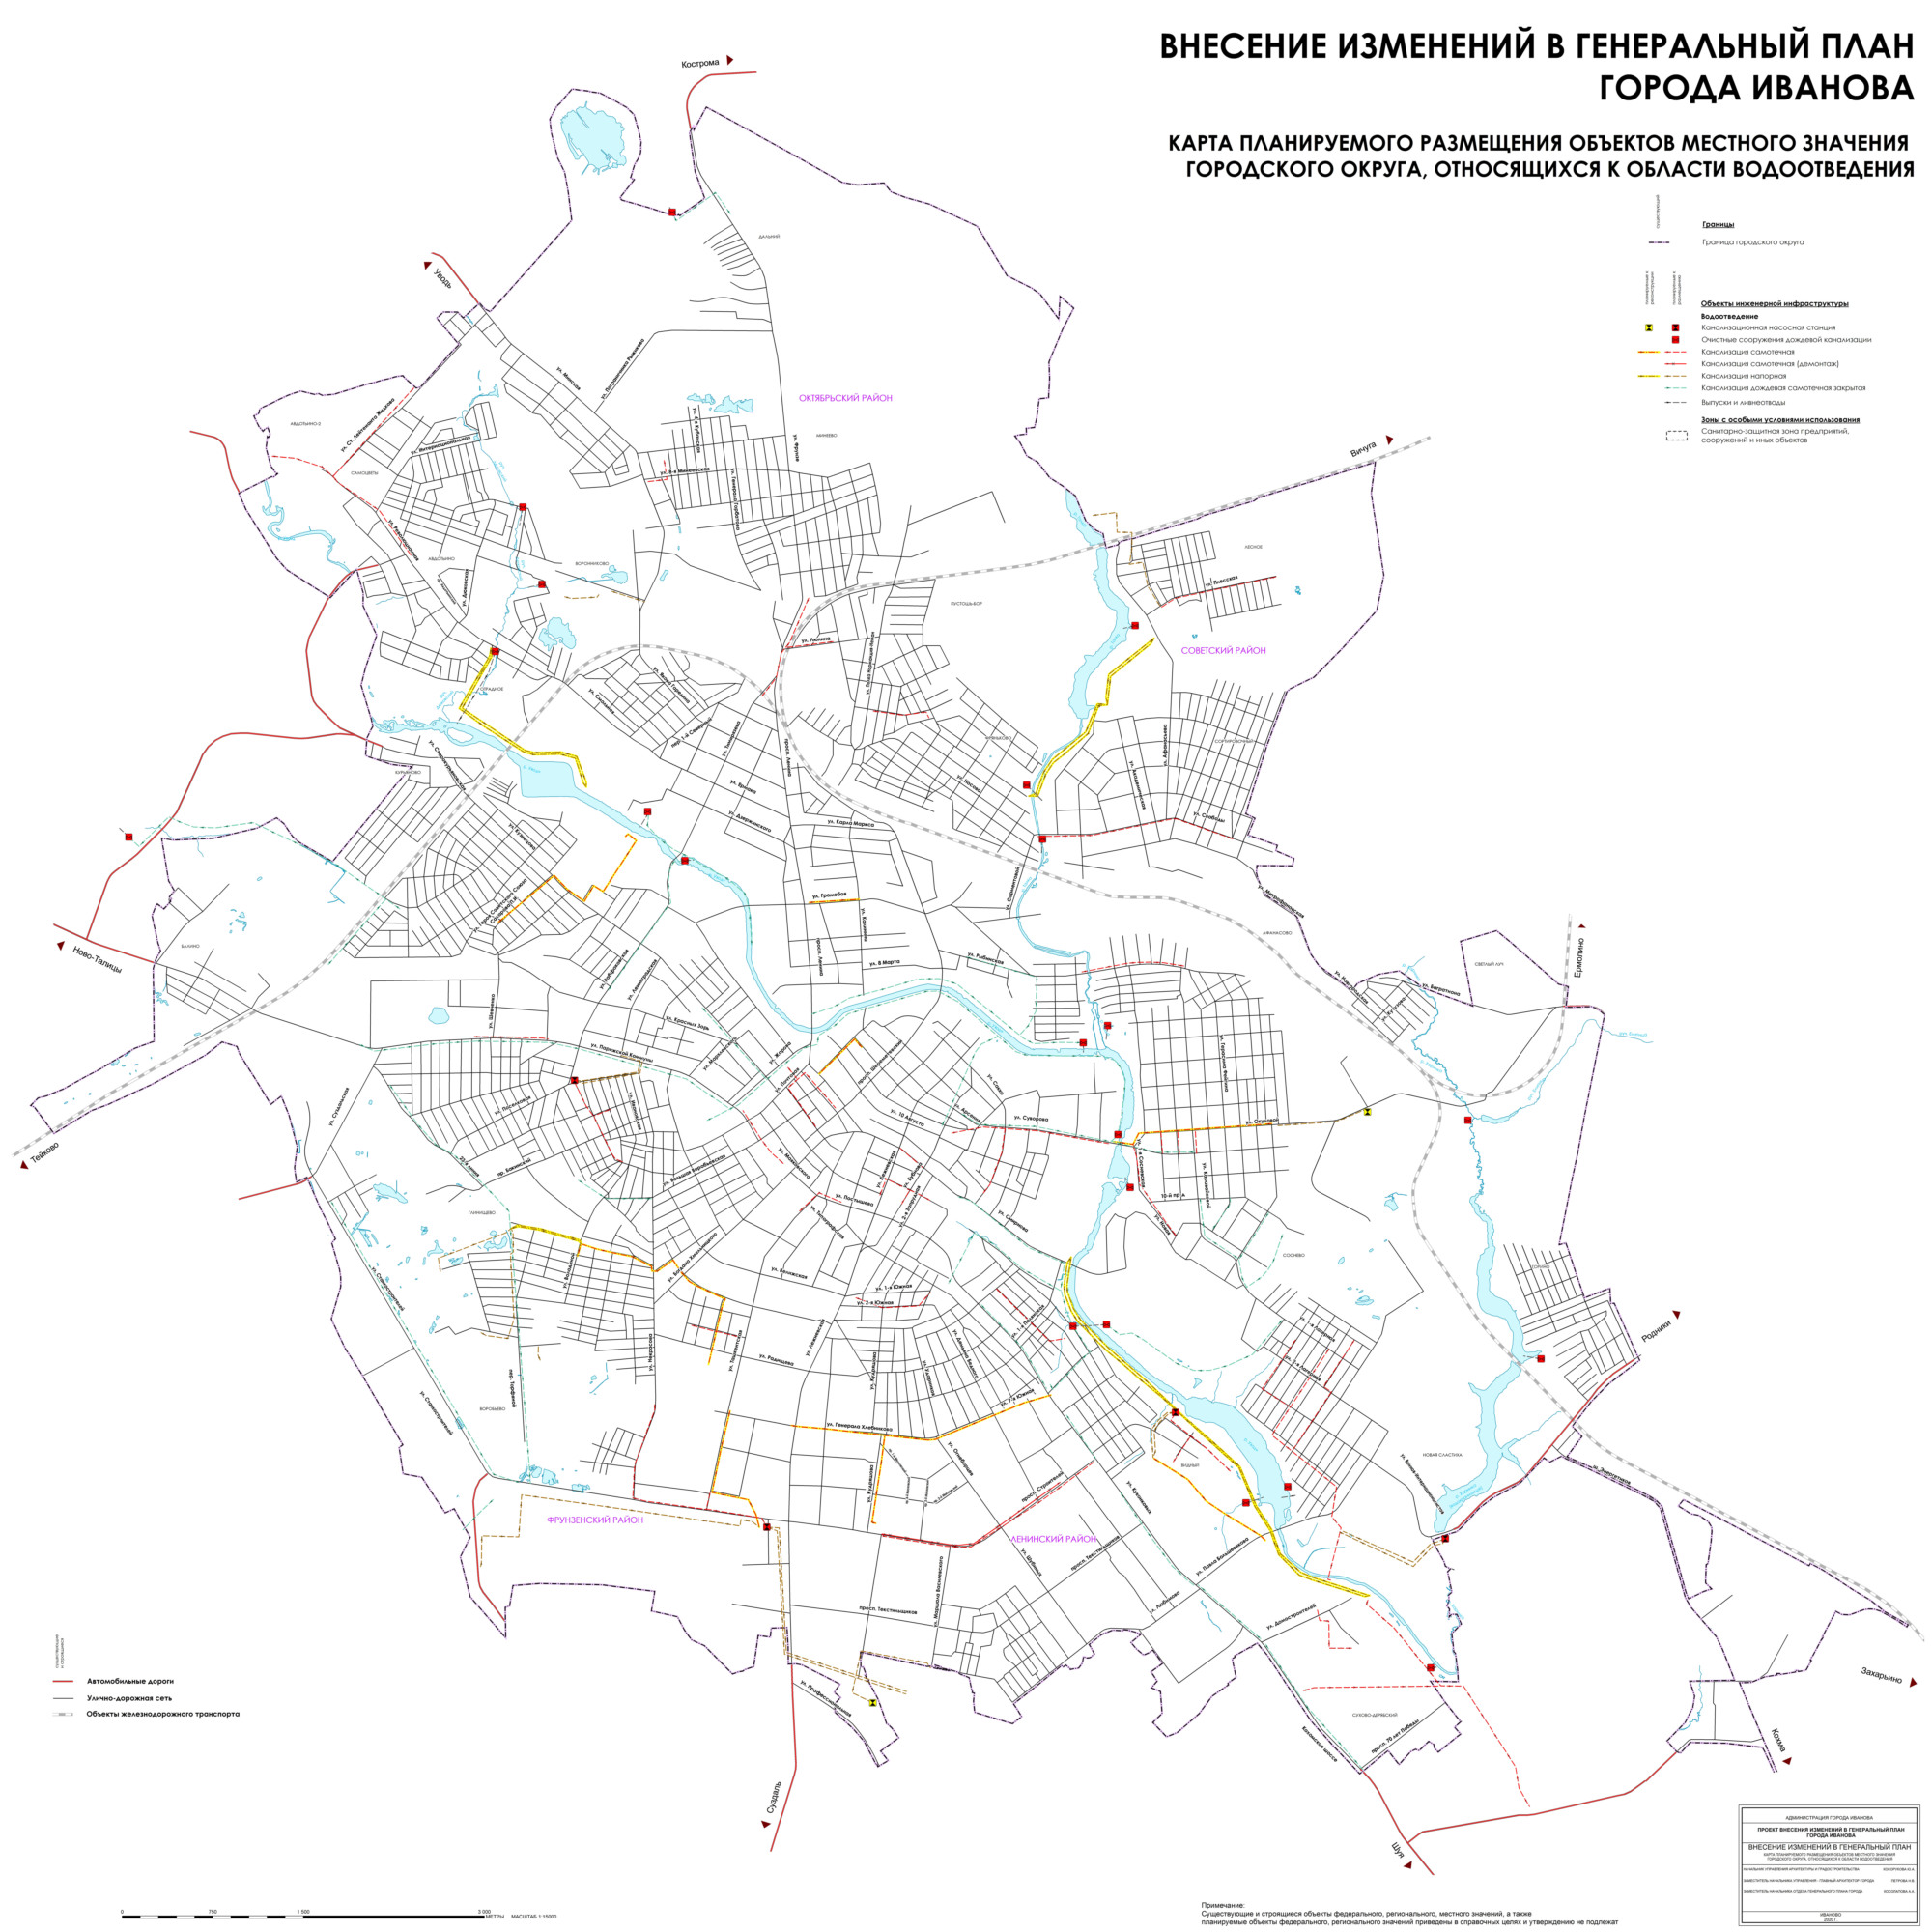 Карта планируемого размещения объектов местного значения городского округа, относящихся к области водоотведения